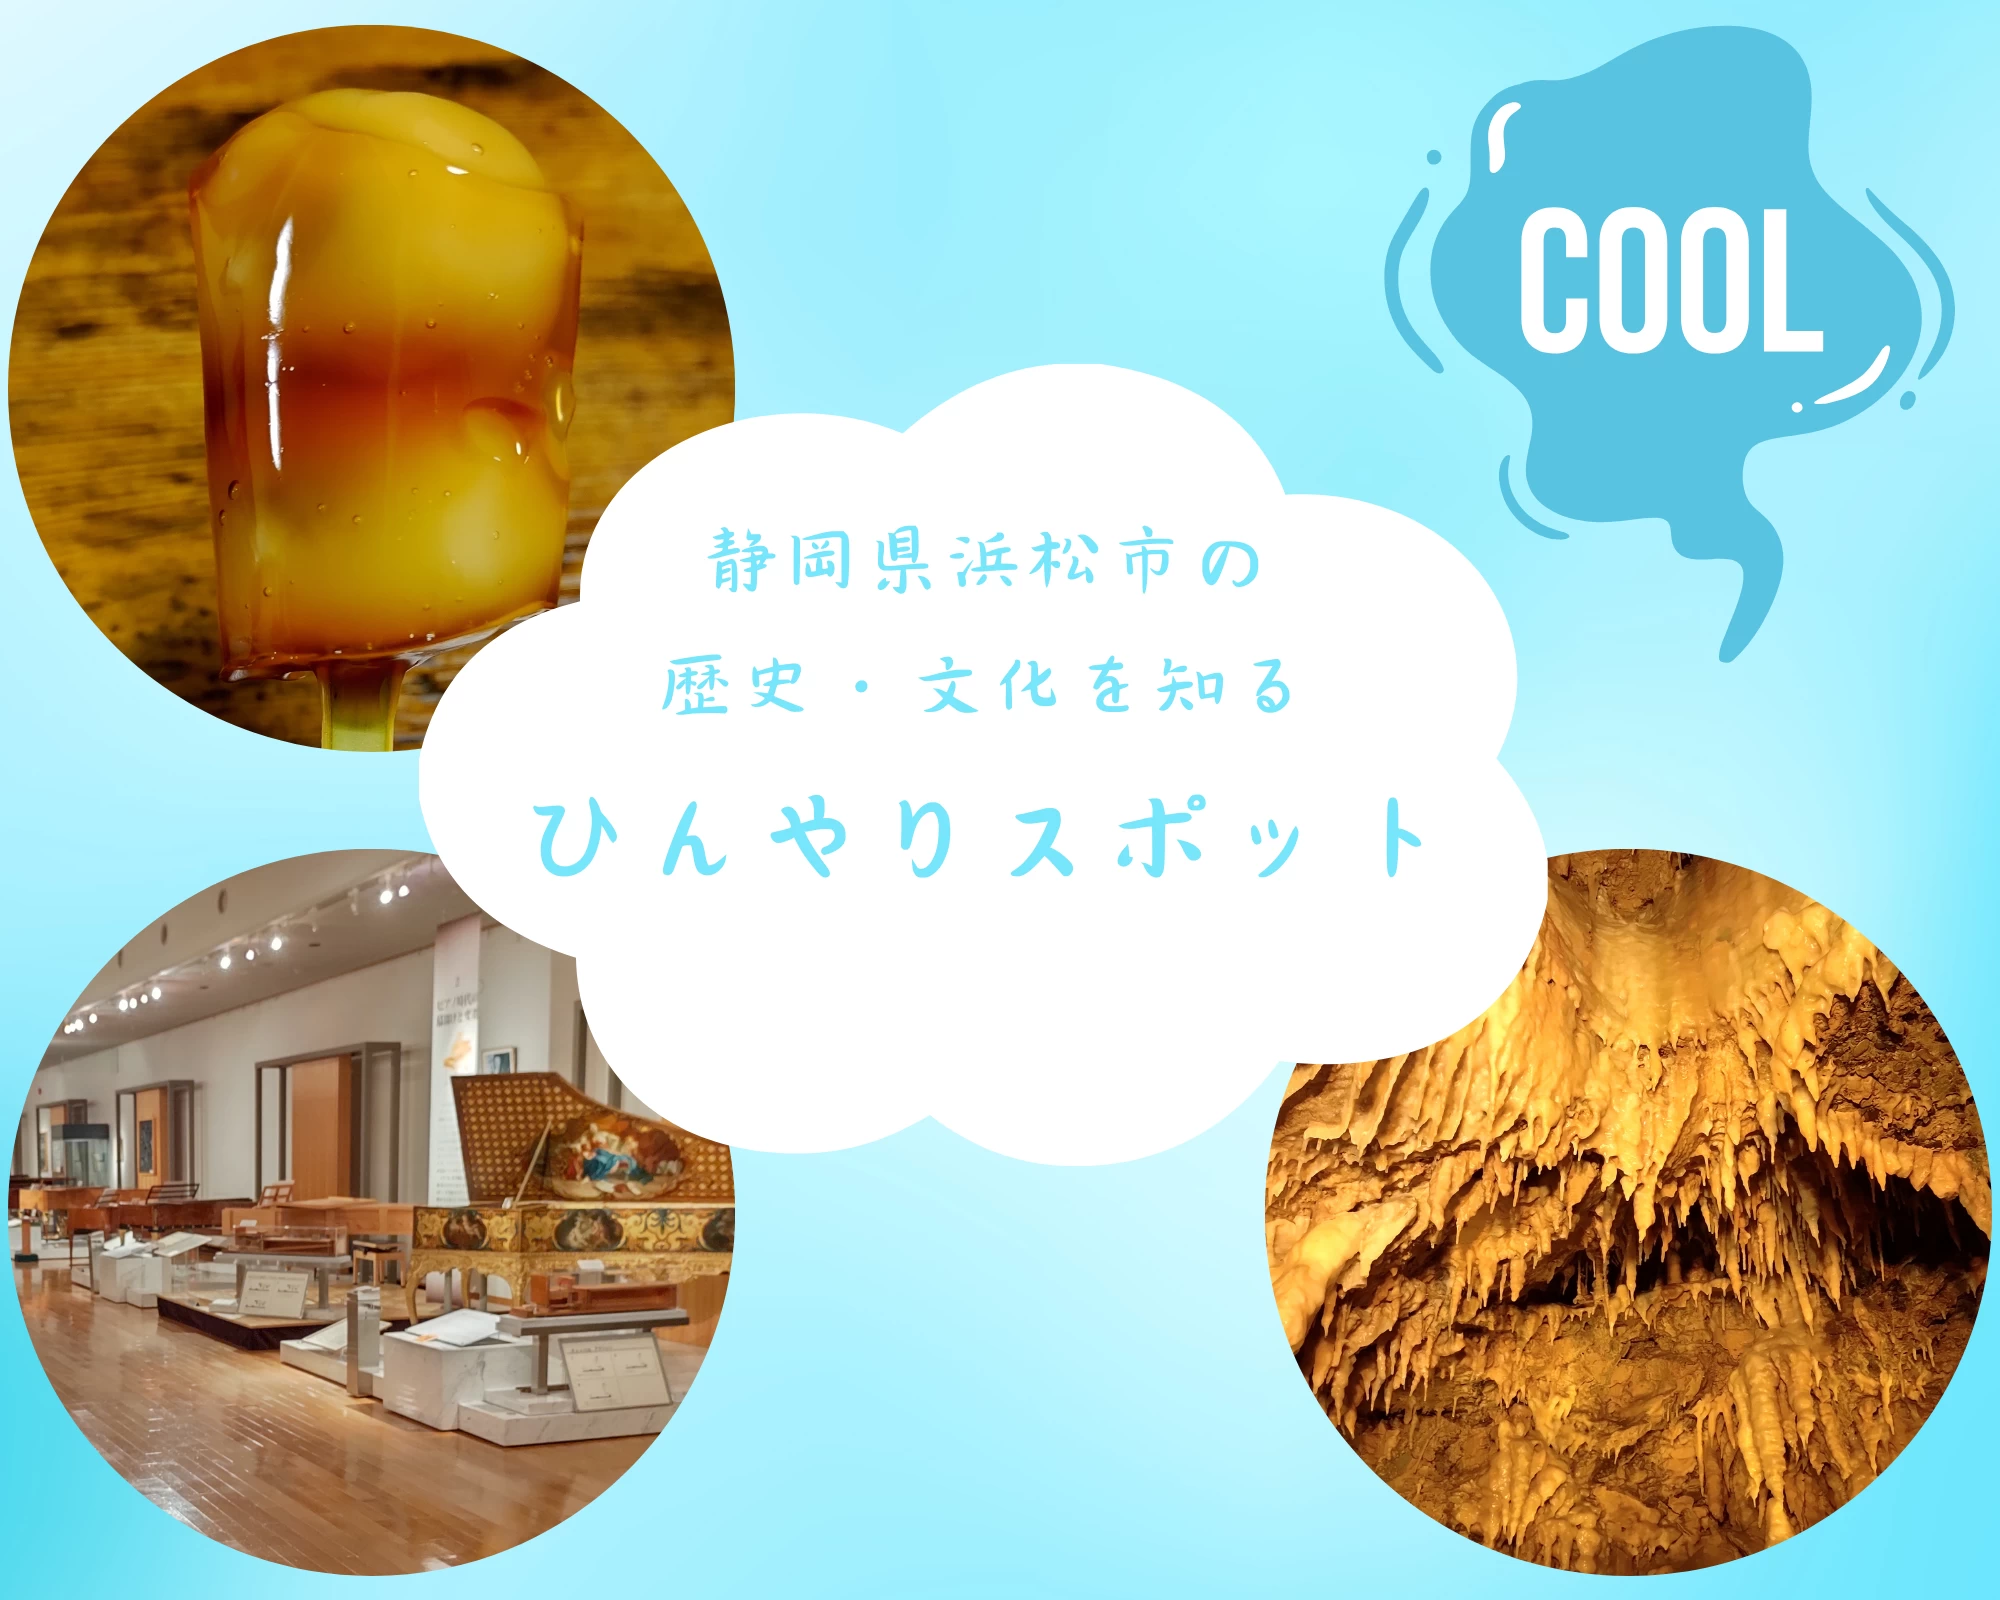 【静岡】ひんやりスポットから浜松の歴史・文化を知る。地元在住ライターおすすめの夏旅